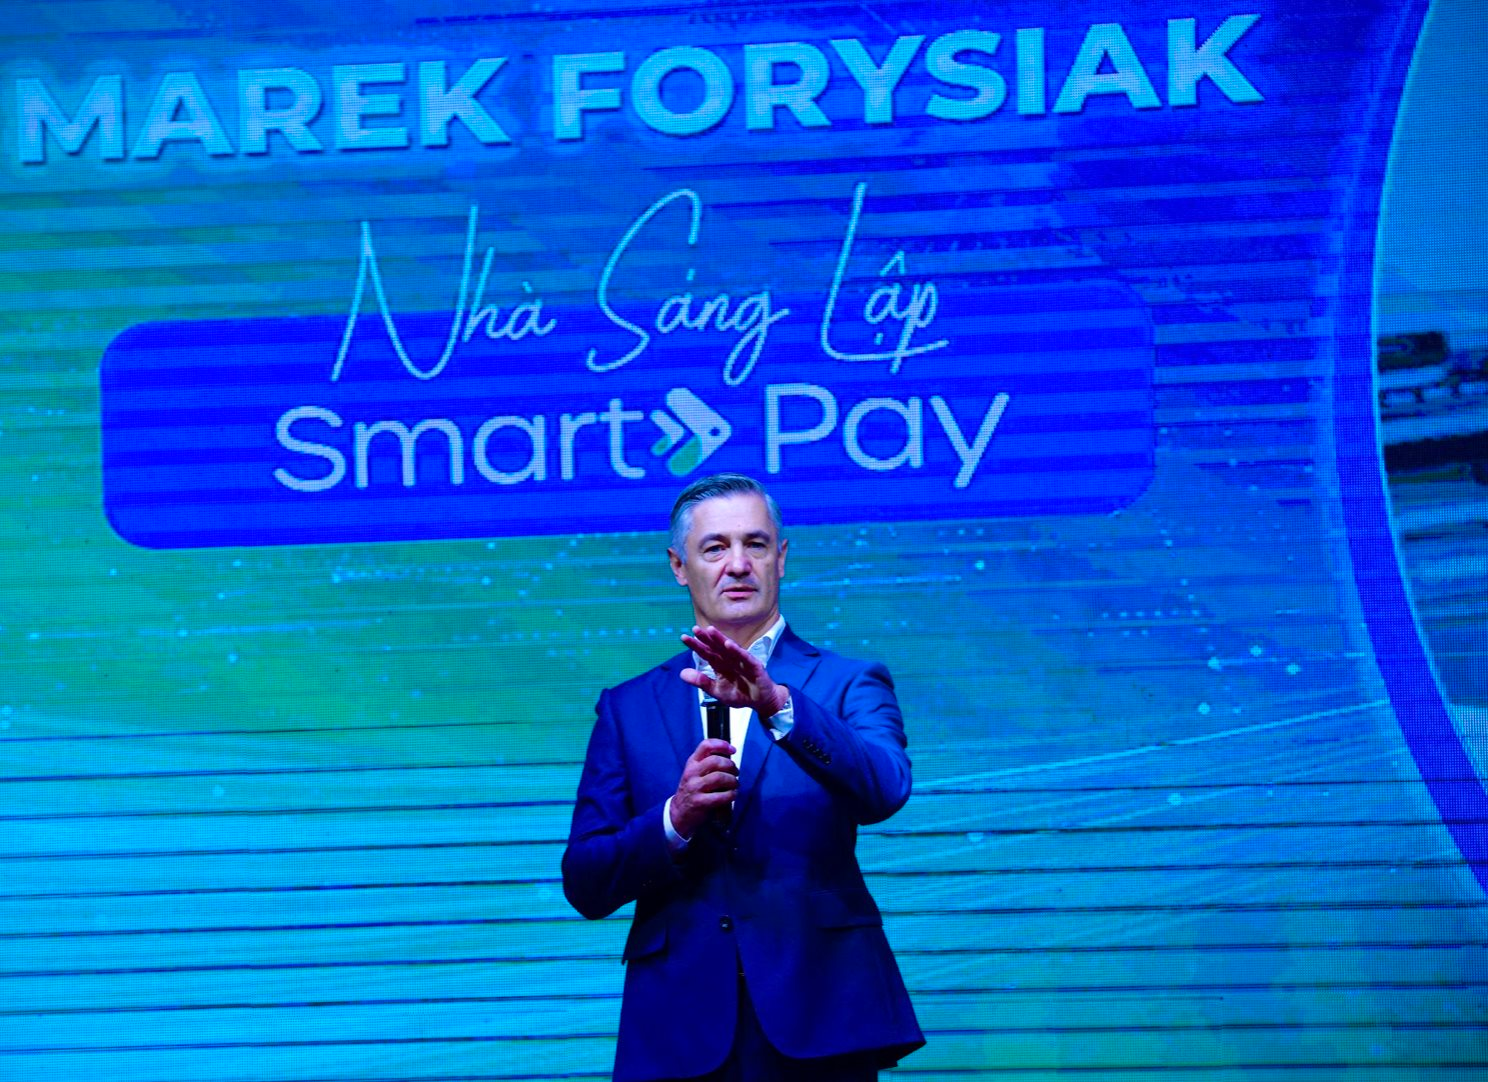 Nhà sáng lập SmartPay: Ước mơ của tôi là 1 ngày khi vào cửa hàng bất kỳ, nhân viên sẽ nói “Xin lỗi chúng tôi không dùng tiền mặt”